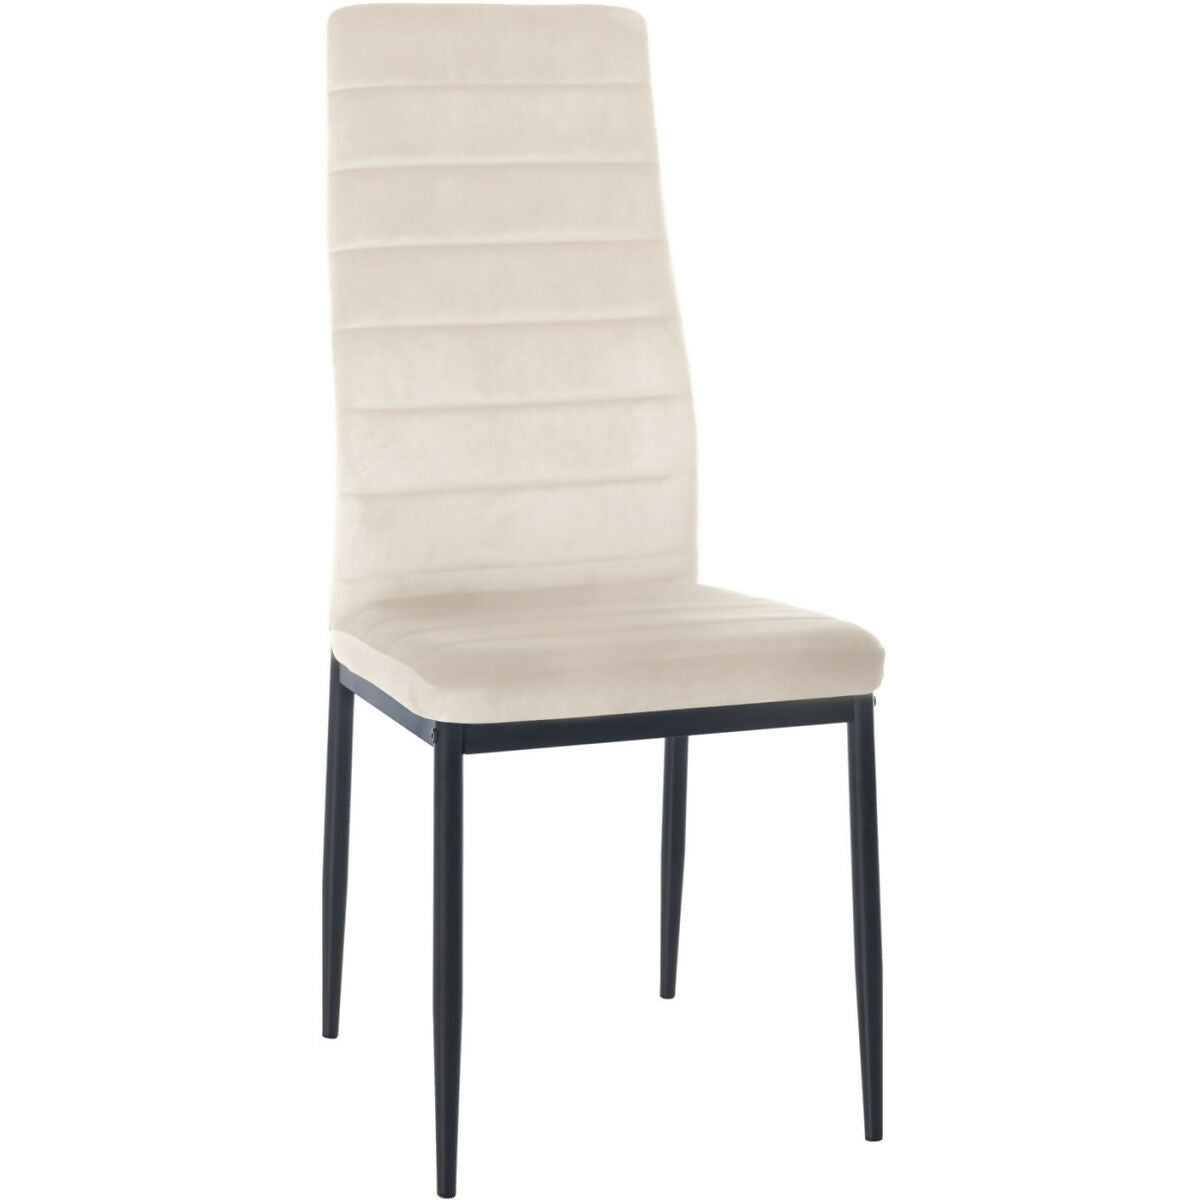 Mayfair Velvet Chair - cream